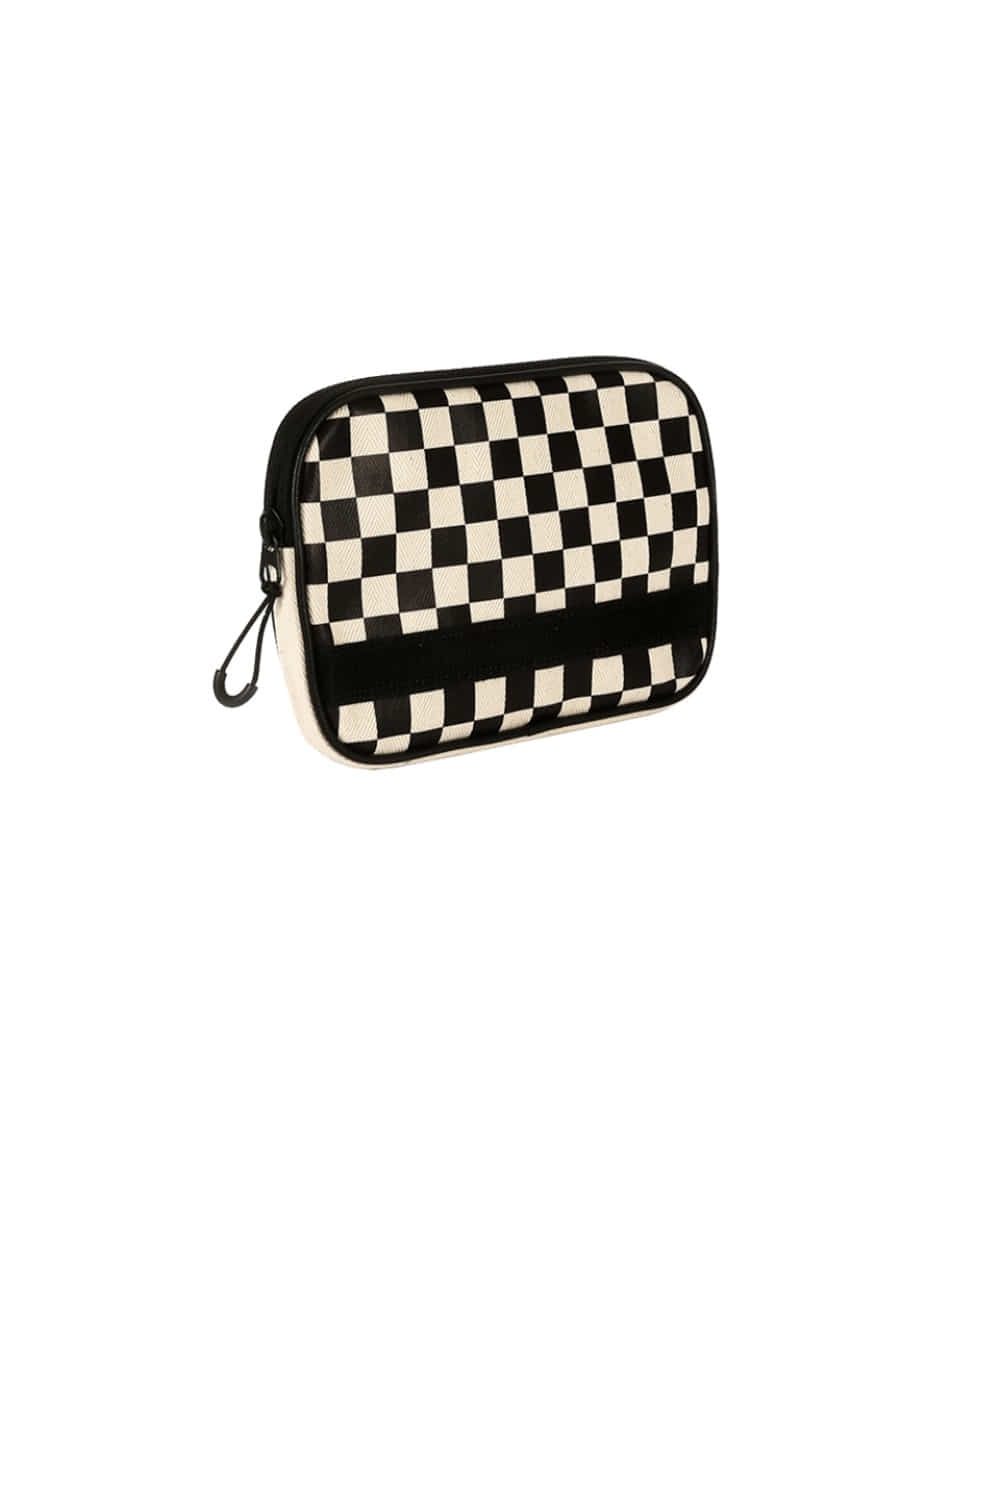 양면 프레임 파우치 체커보드 블랙 2-side FRAME pouch checkerboard BLACK